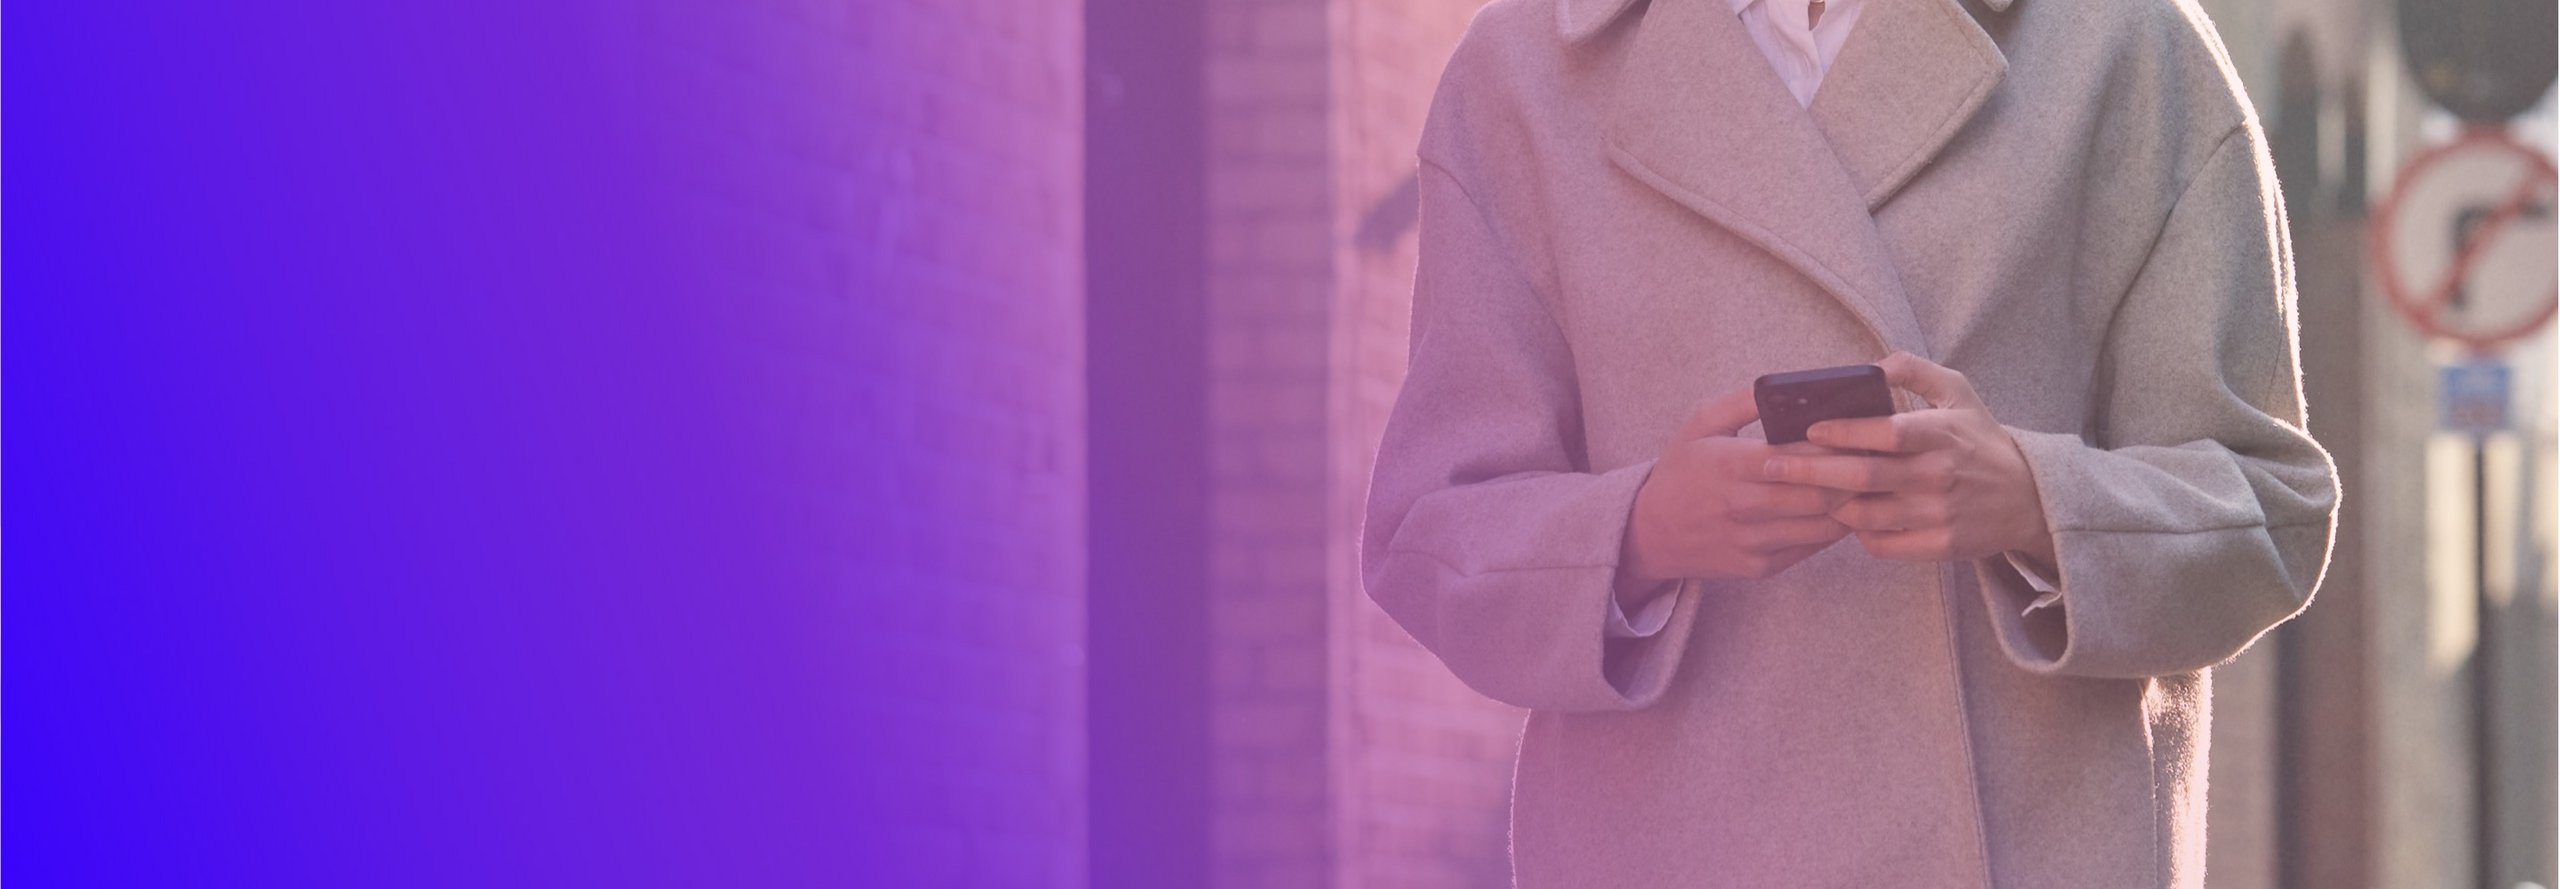 امرأة ترتدي معطفًا تمشي وهي تحمل هاتفًا محمولاً في يدها